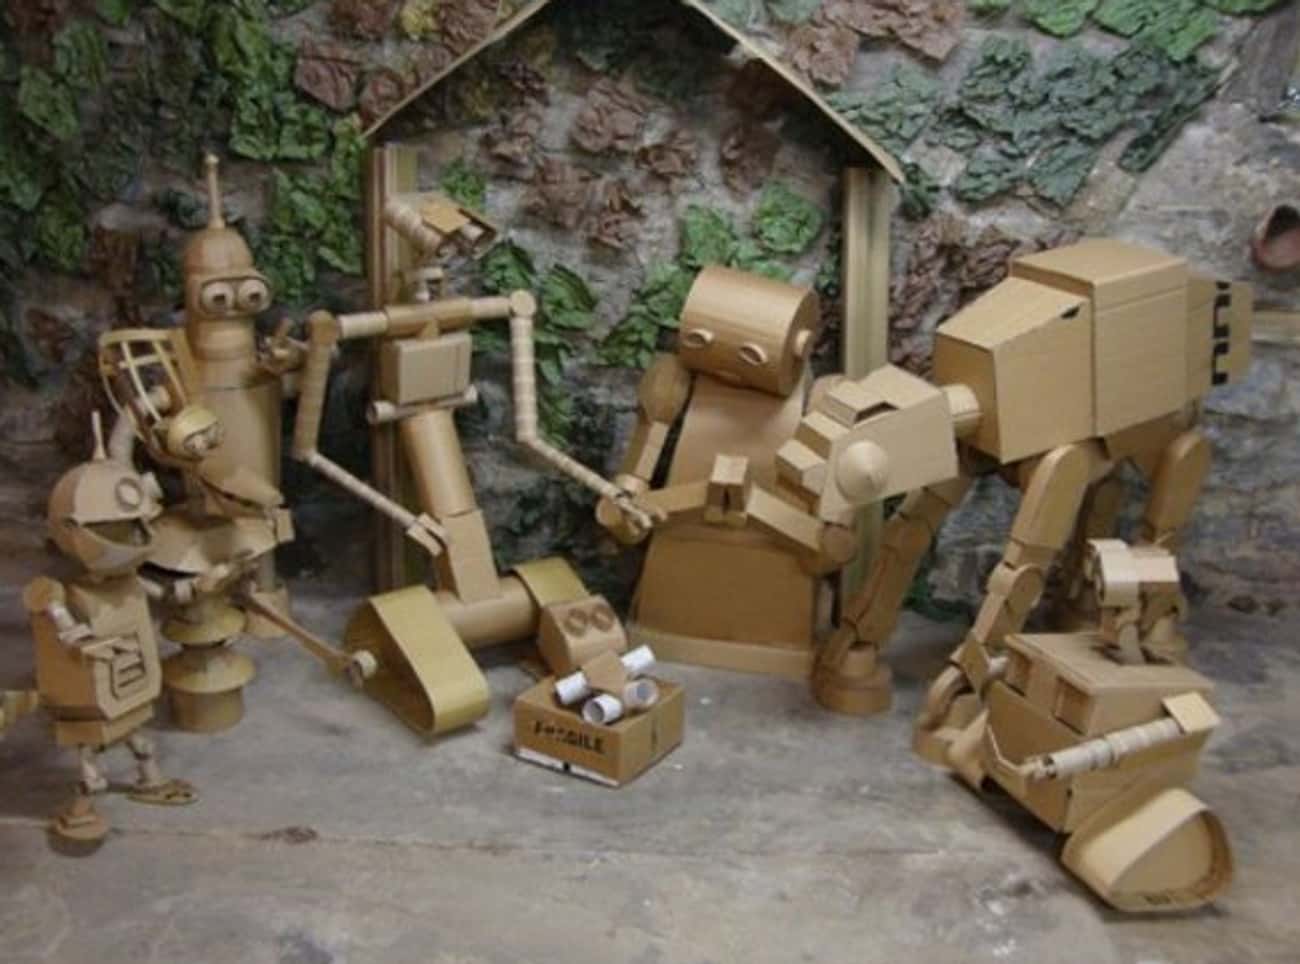 Robot Manger Scene